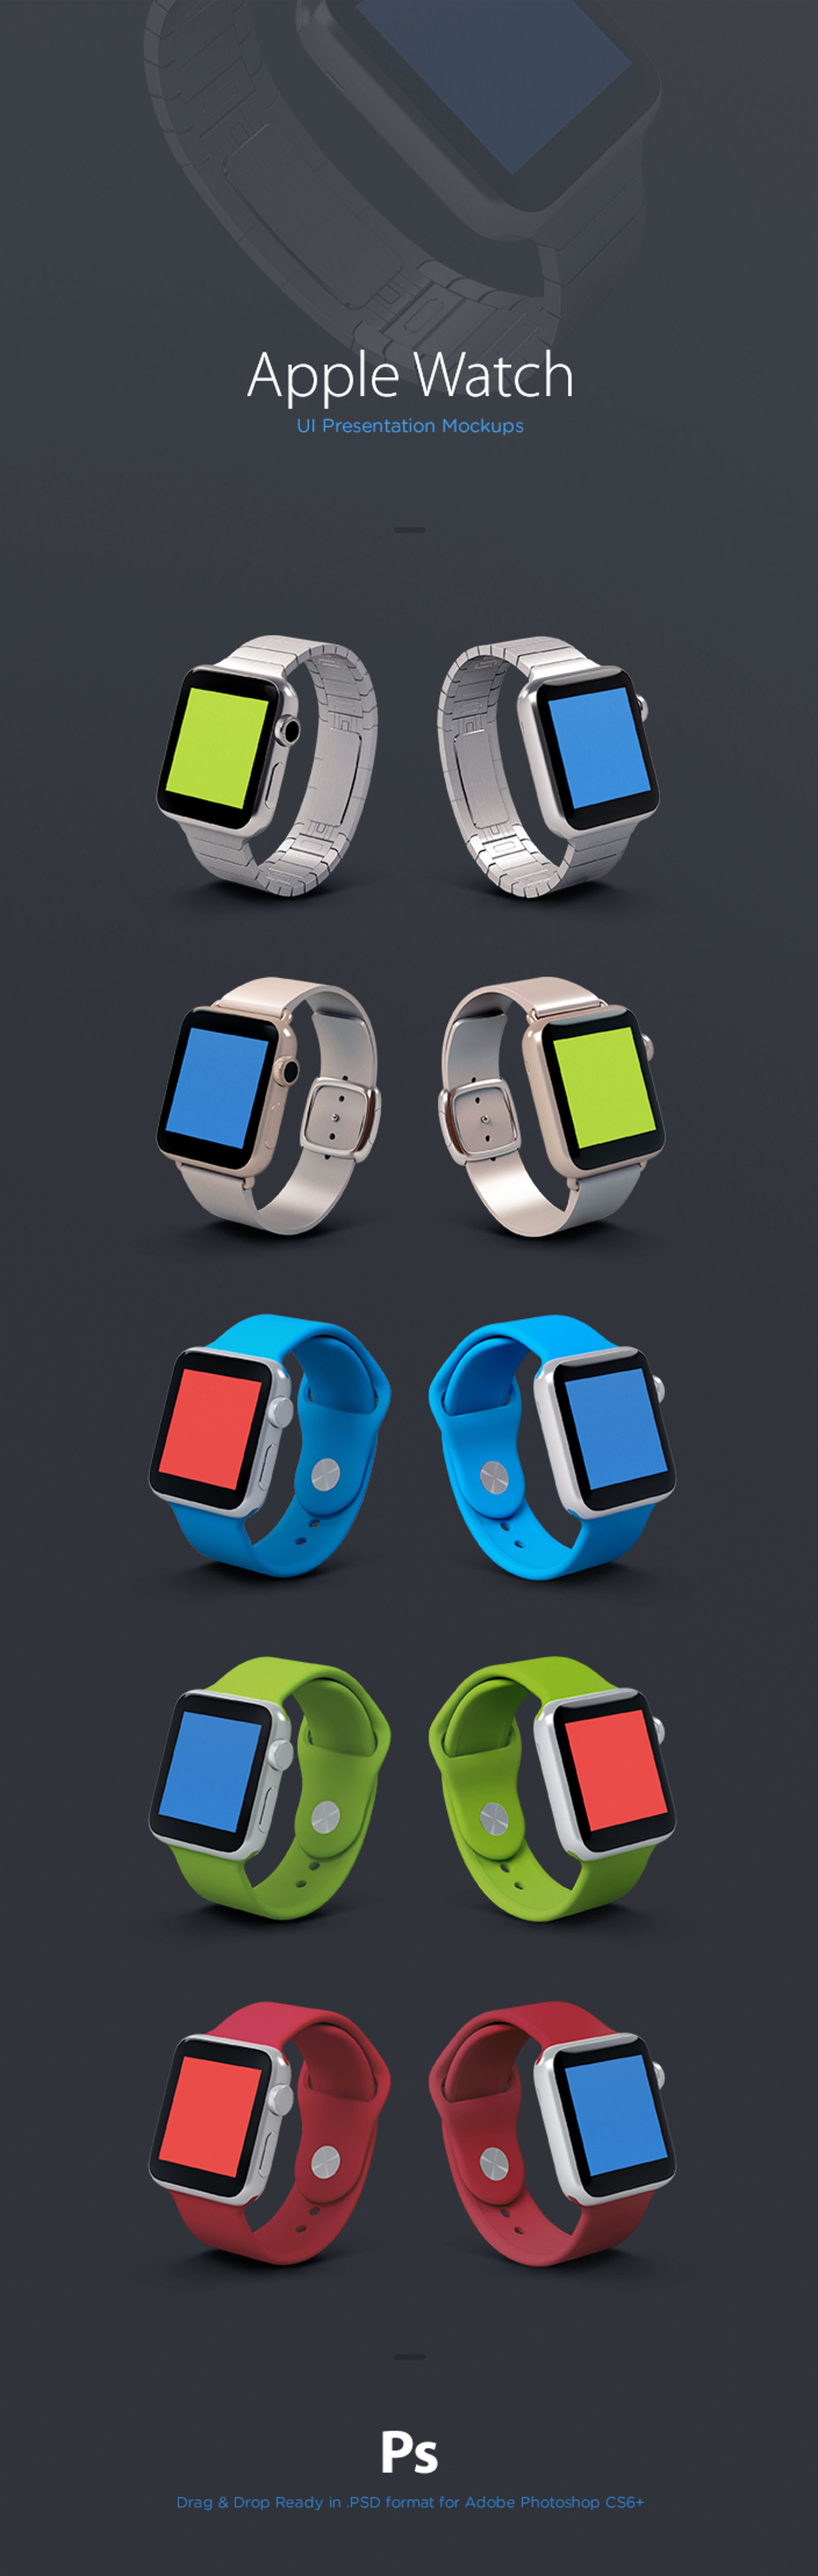 不同色系表带Apple Watch苹果手表.PSD模型 Apple Watch Mockup